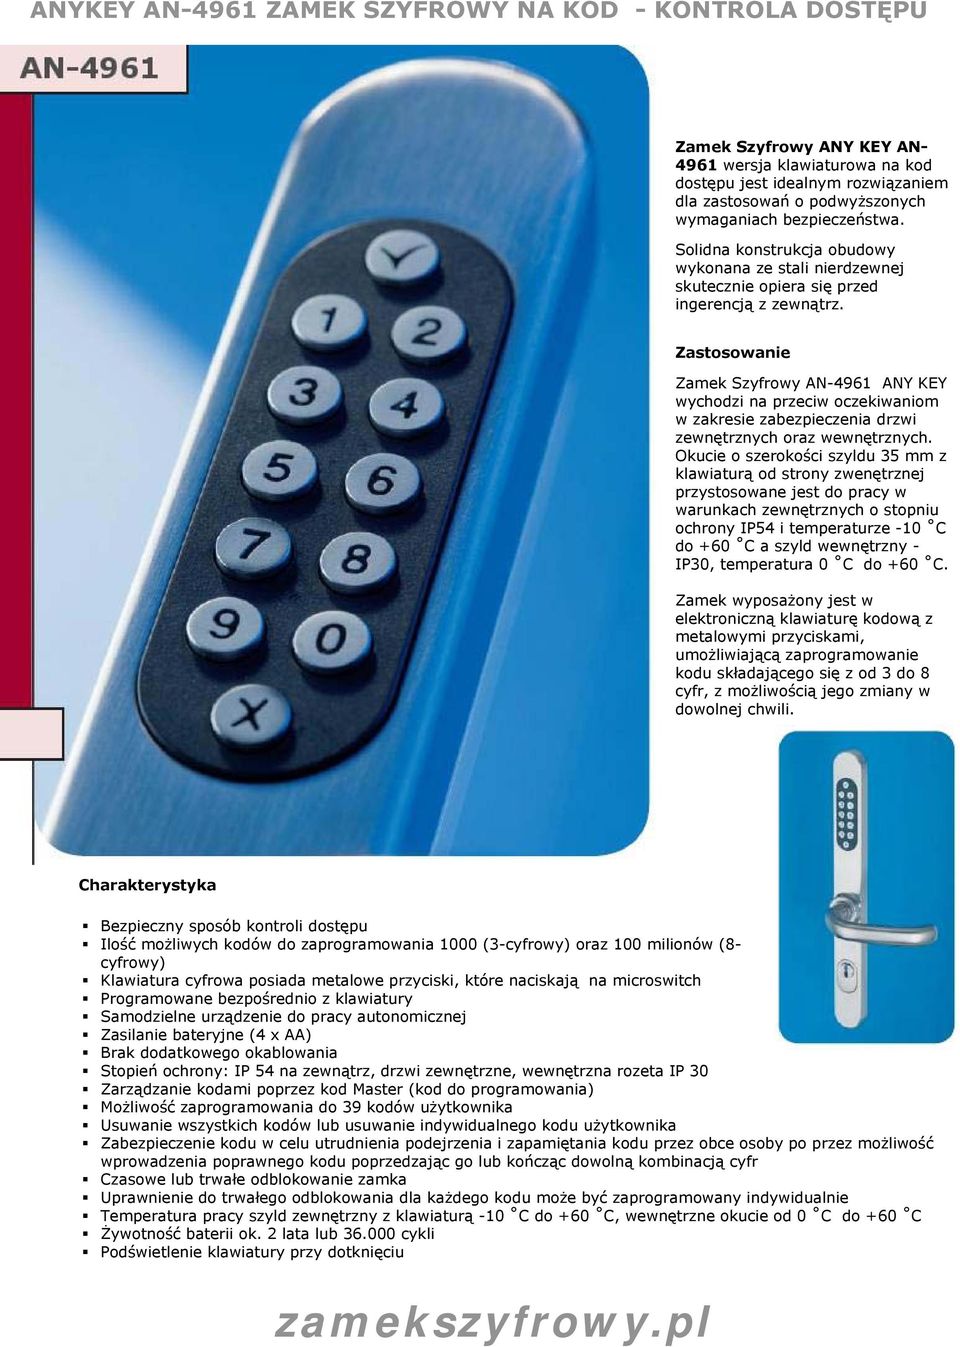 Zastosowanie Zamek Szyfrowy AN-4961 ANY KEY wychodzi na przeciw oczekiwaniom w zakresie zabezpieczenia drzwi zewnętrznych oraz wewnętrznych.